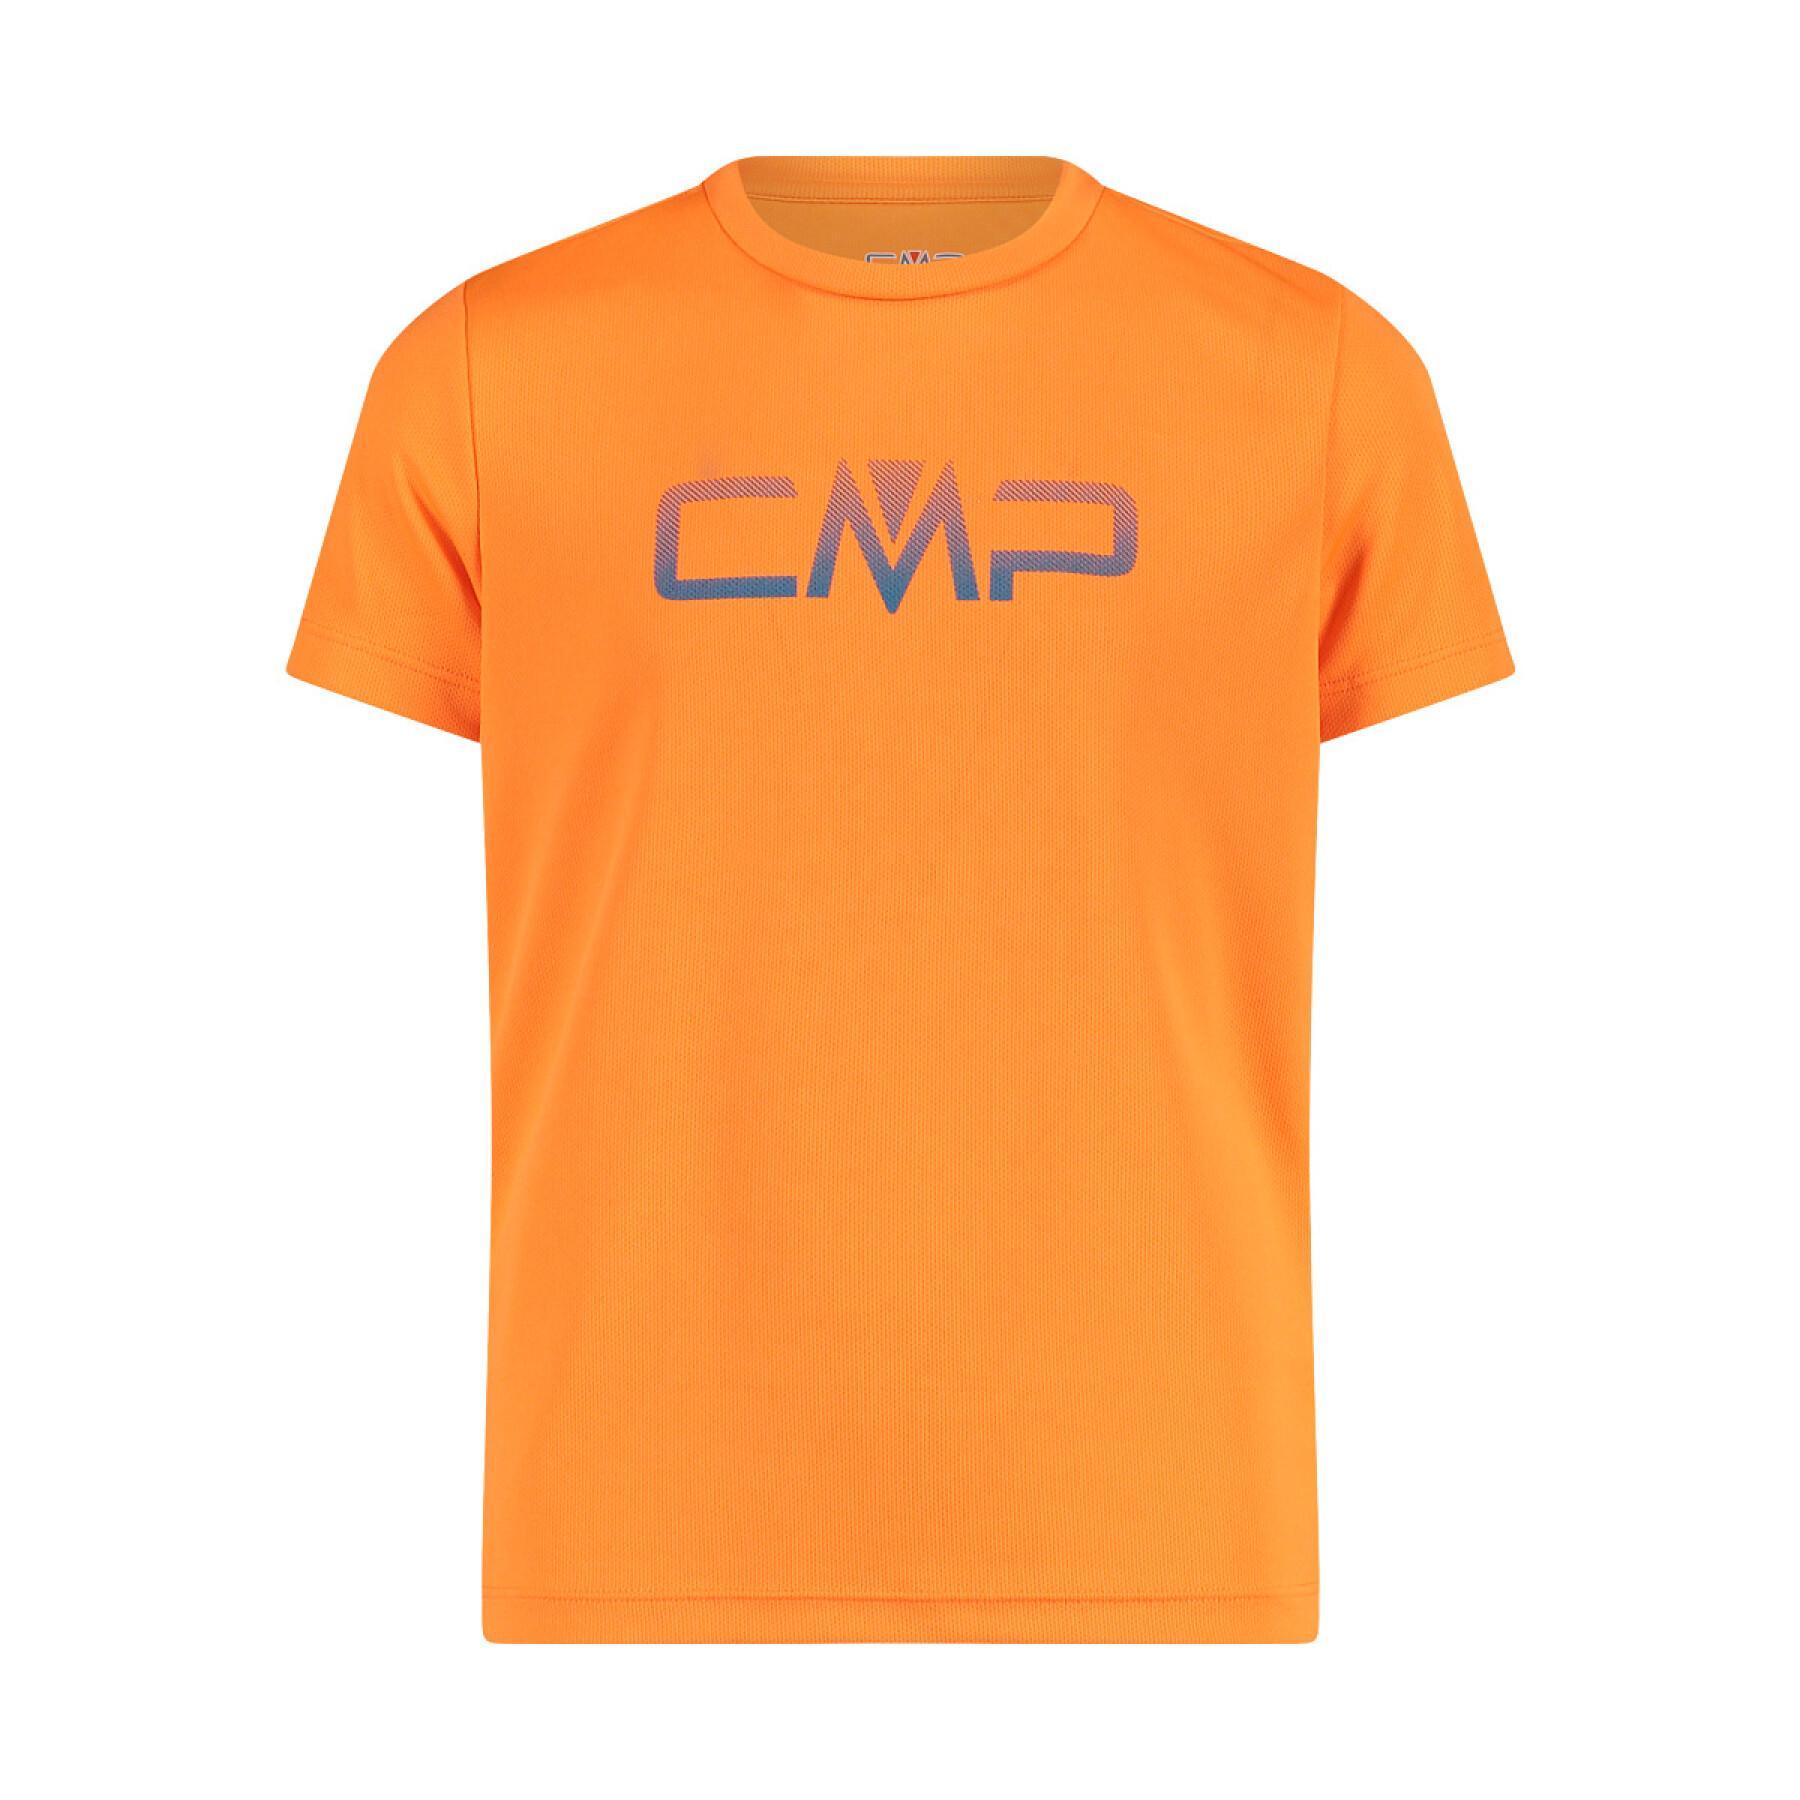 T-shirt bambino con logo CMP